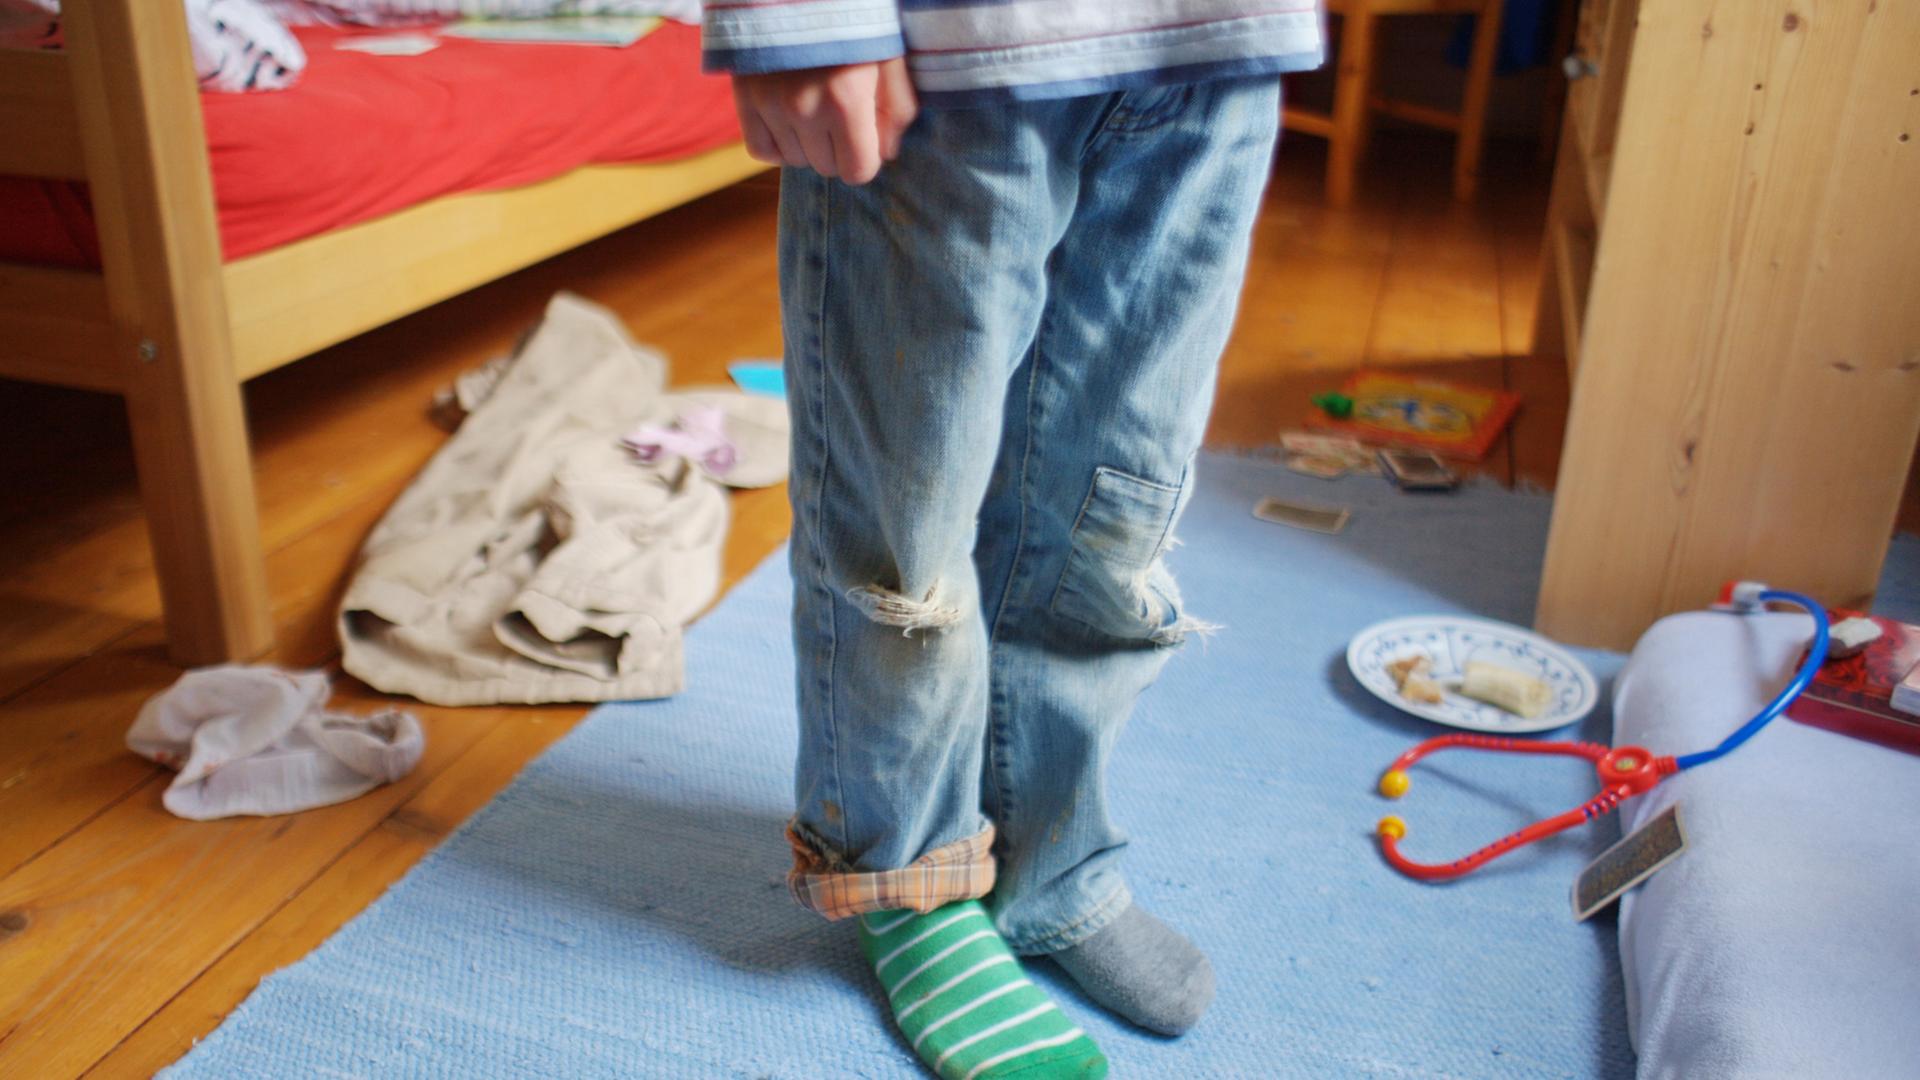 Ein kleiner Junge steht mit schmutziger Kleidung, zerrissenen Hosen und verschiedenen Strümpfen in einem unaufgeräumten Zimmer.